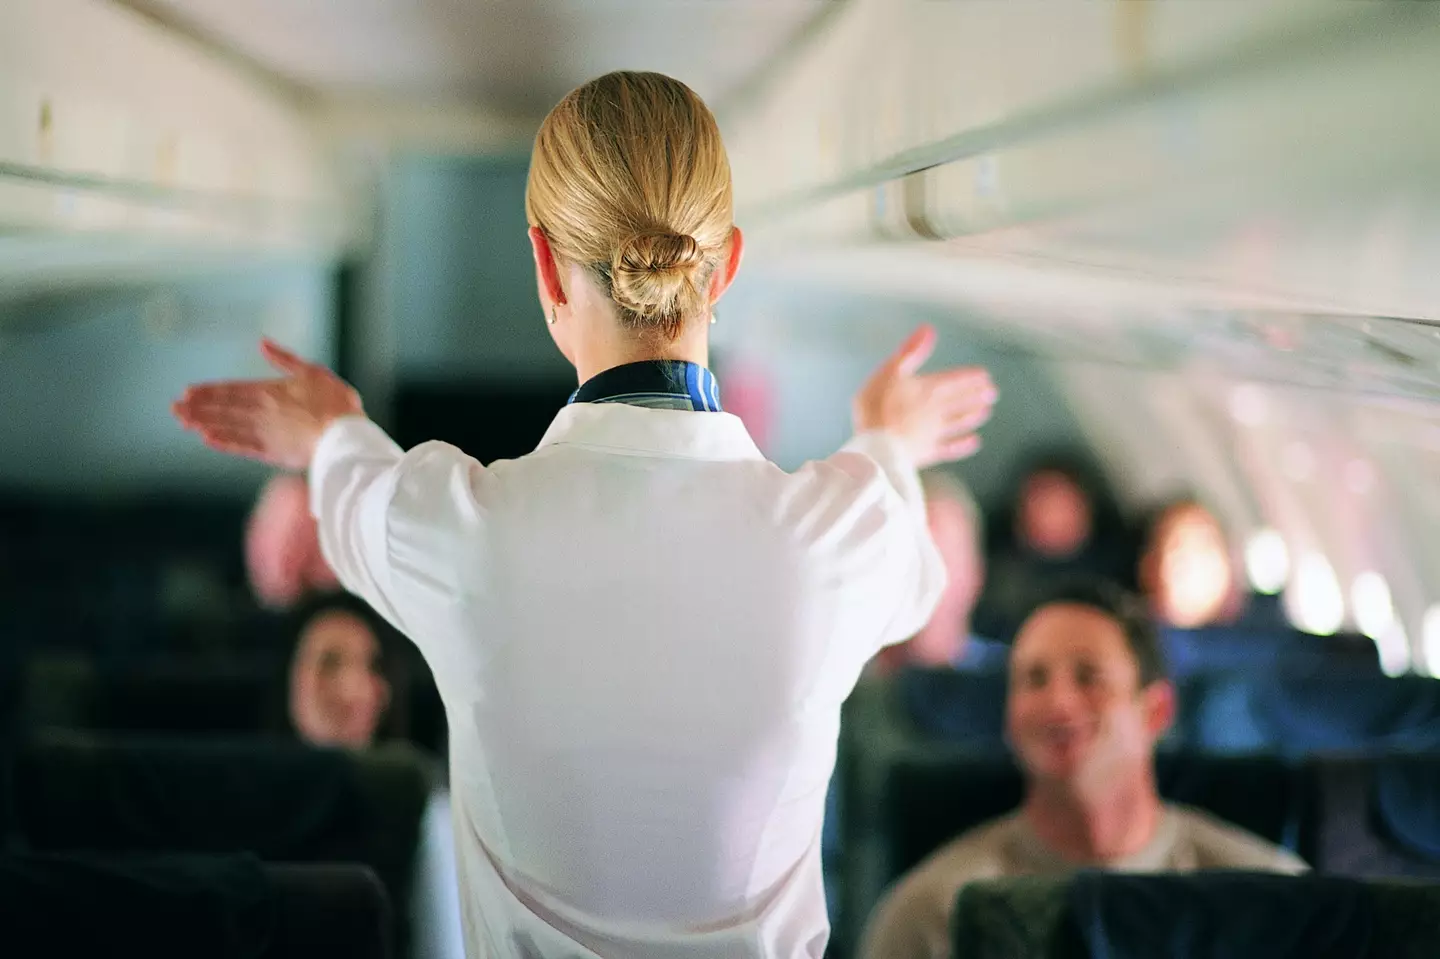 È sempre importante trattare gli assistenti di volo con rispetto.  Immagine d'archivio Getty